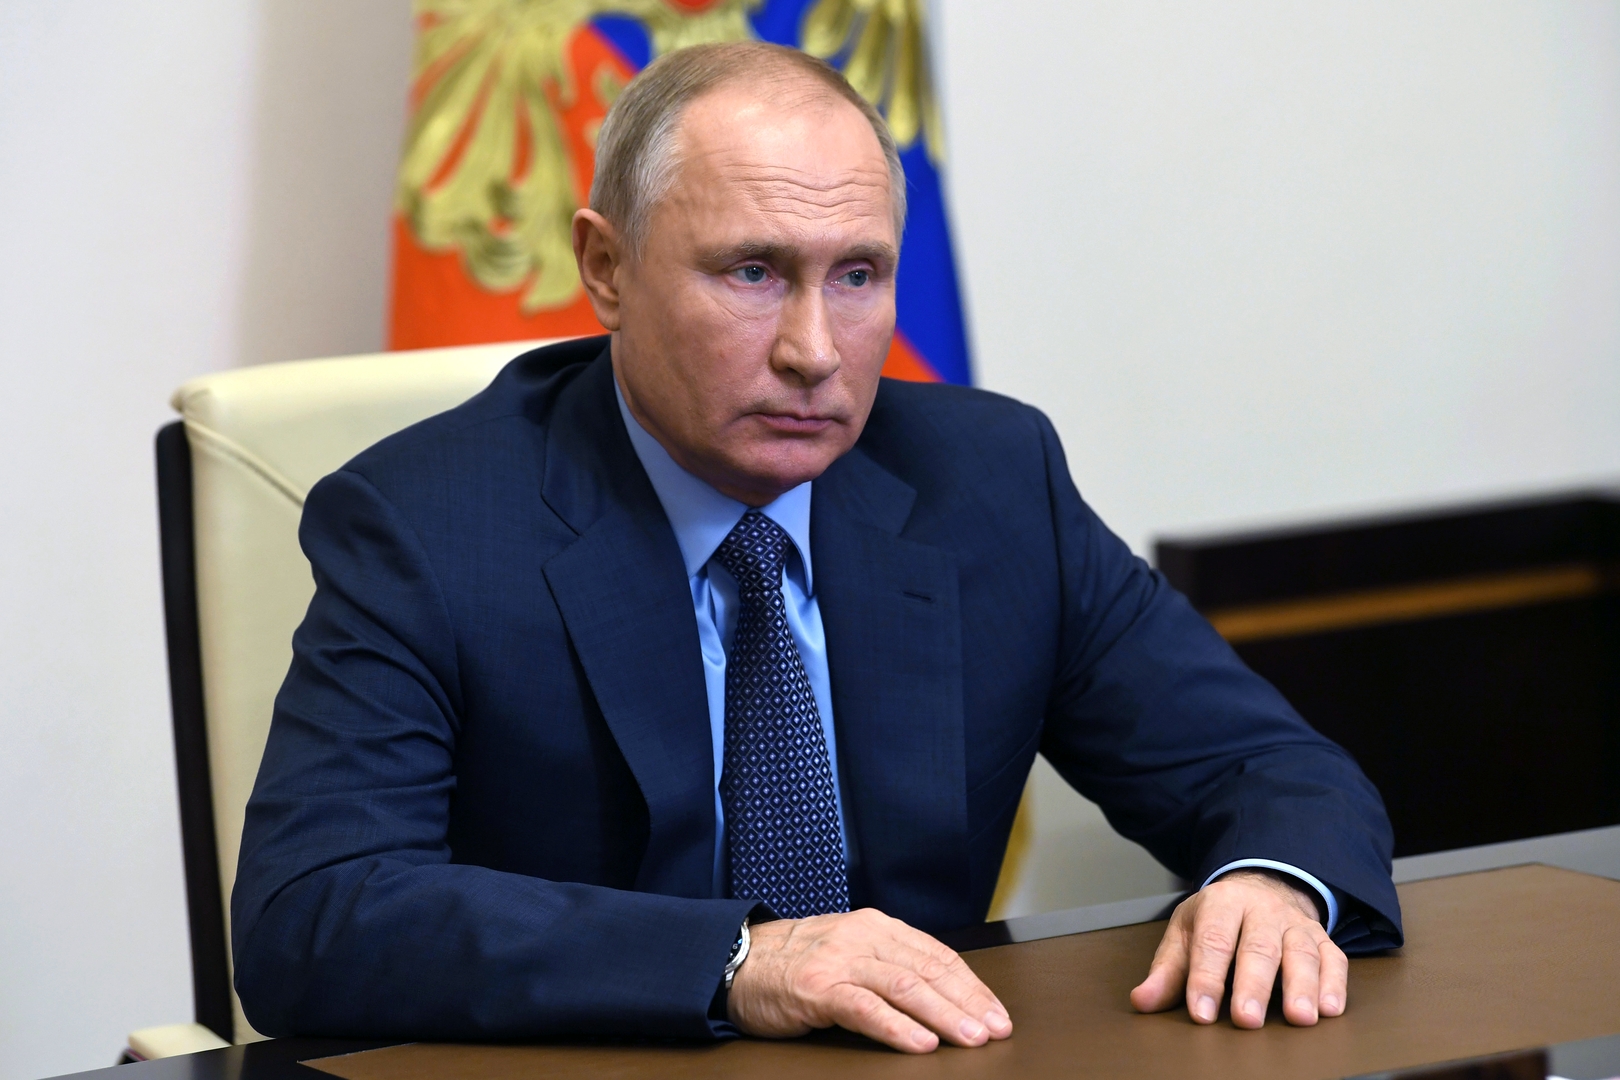 بوتين يحدد الأهداف الاقتصادية لروسيا